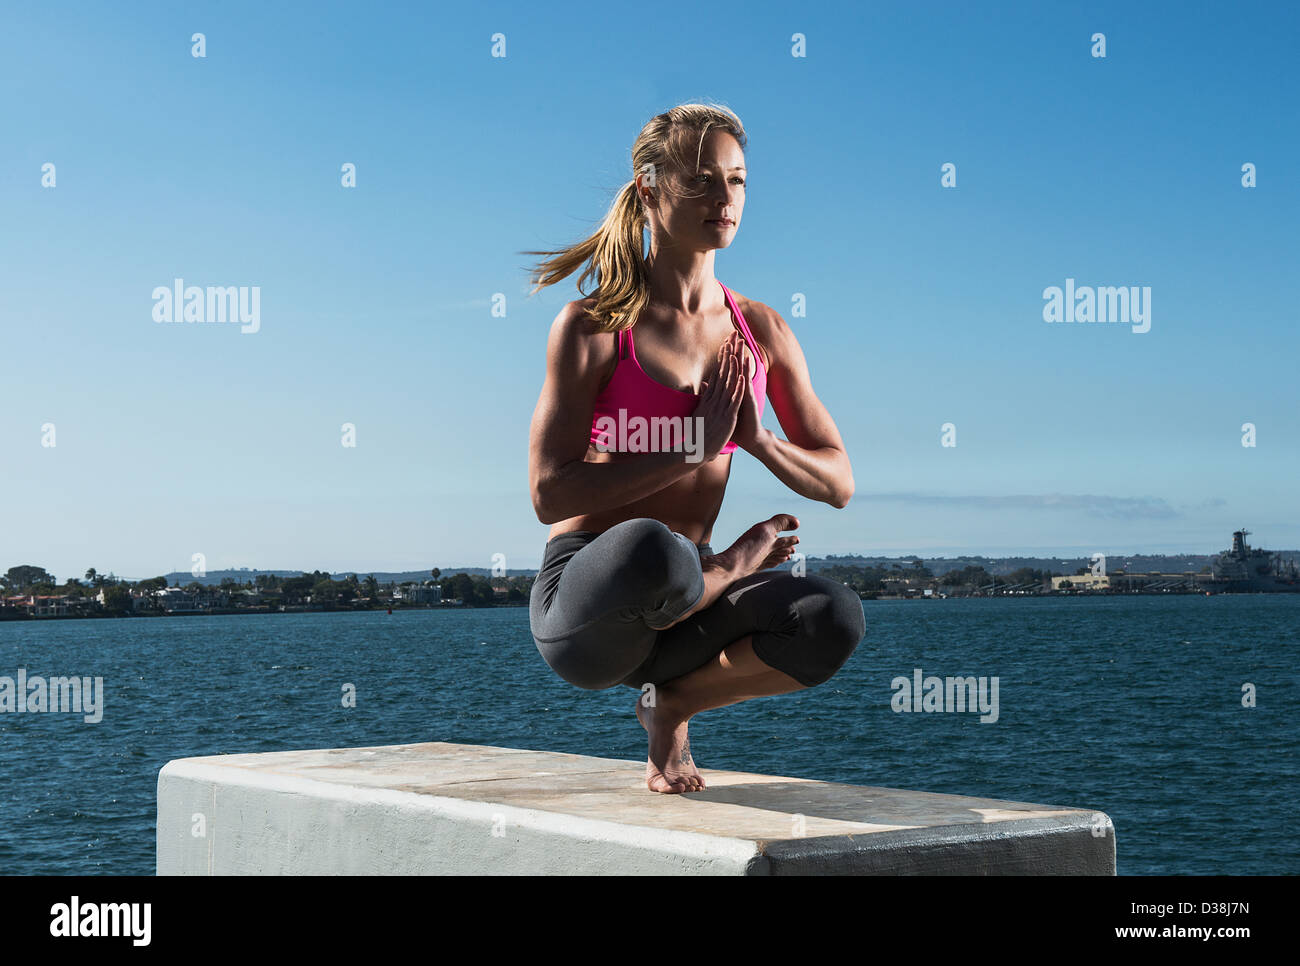 Woman practicing yoga on bloc de béton Banque D'Images